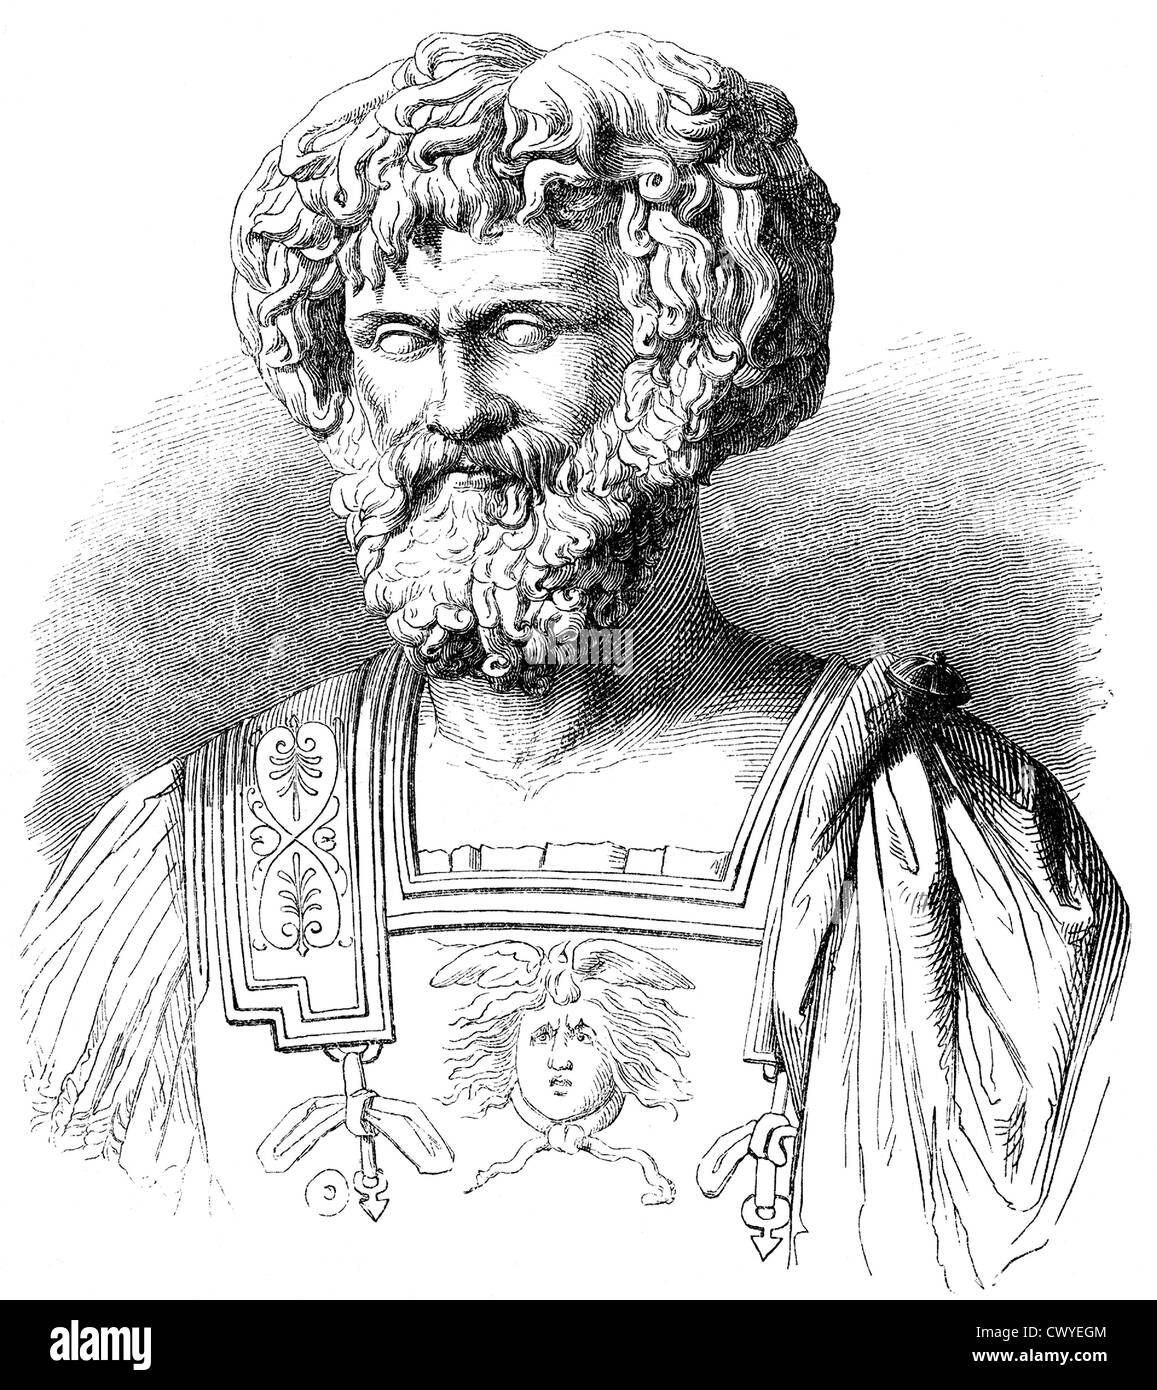 Hannibal ou Hannibal Barkas, vers 246-183 avant J.-C., grand commandant militaire de l'antiquité, dans la seconde guerre punique contre le Romain Banque D'Images